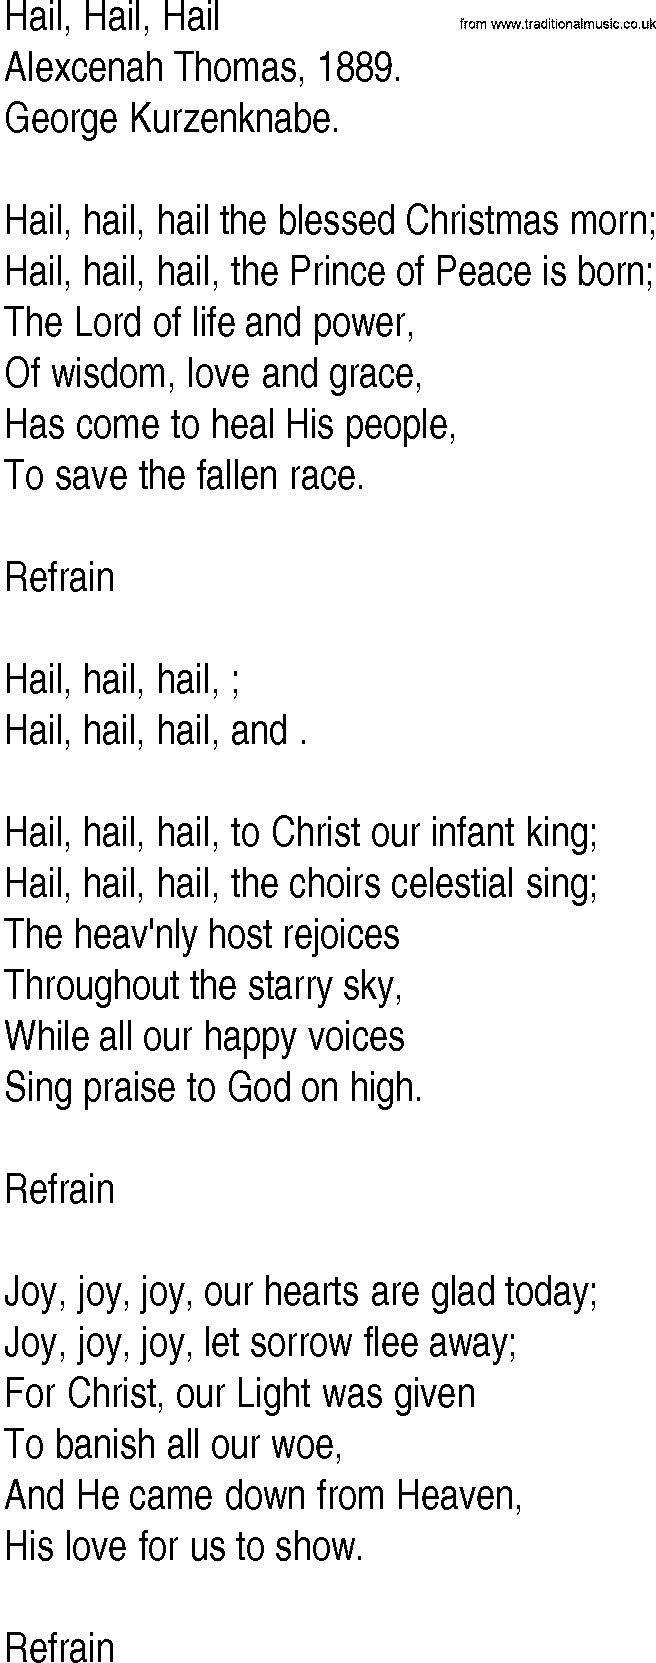 Hymn and Gospel Song: Hail, Hail, Hail by Alexcenah Thomas lyrics